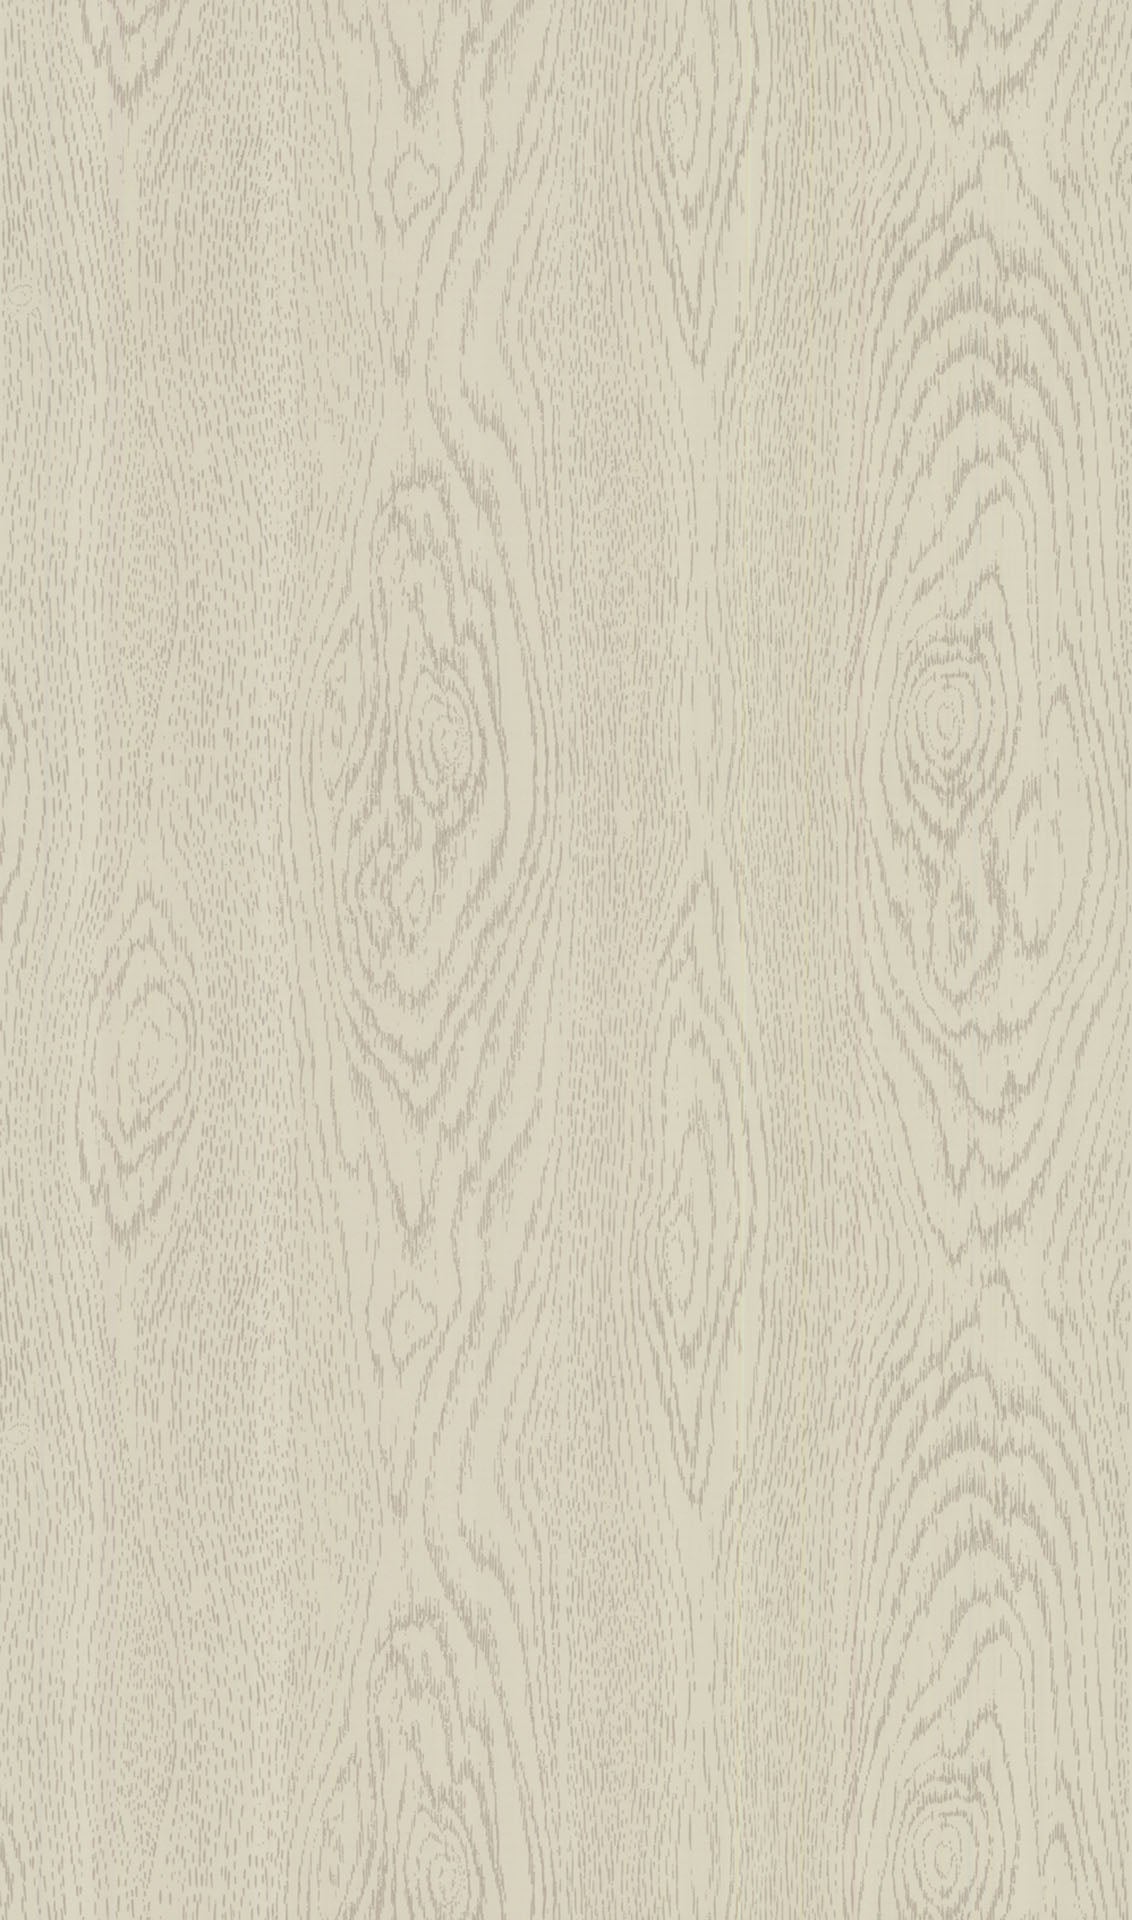 Top Dark Wood Grain Background Stock Vectors Illustrations  Clip Art   iStock  Wood texture Wood background